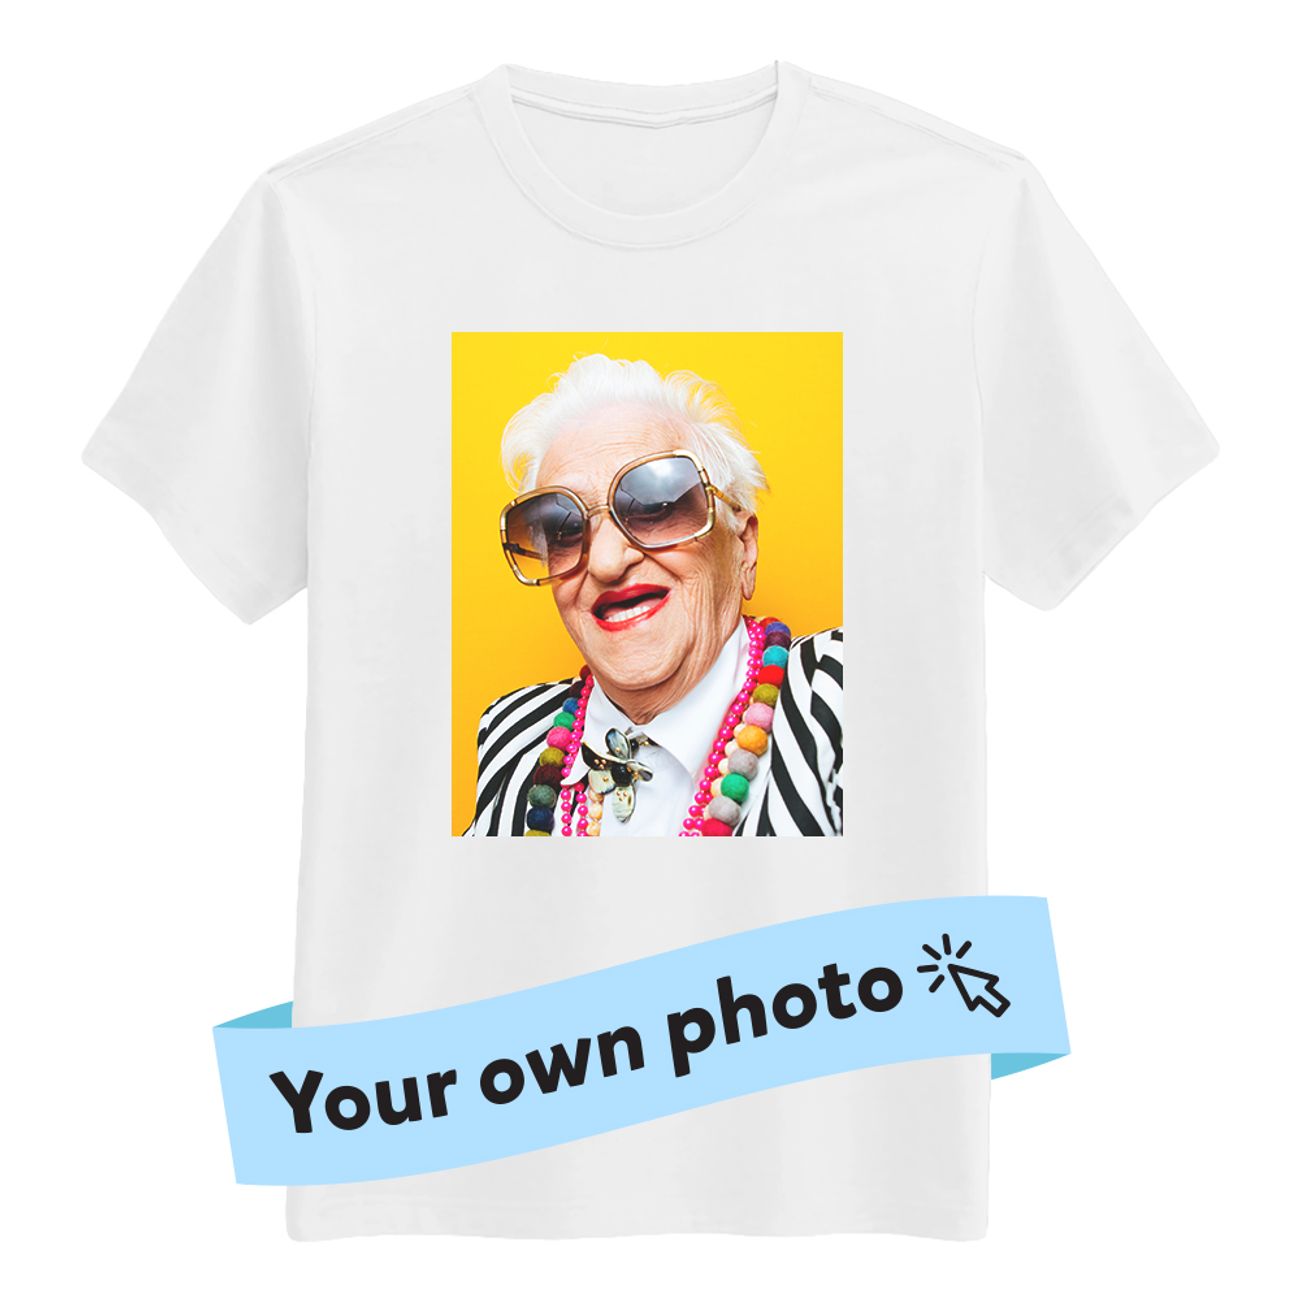 designa-din-egen-barn-t-shirt-85144-1